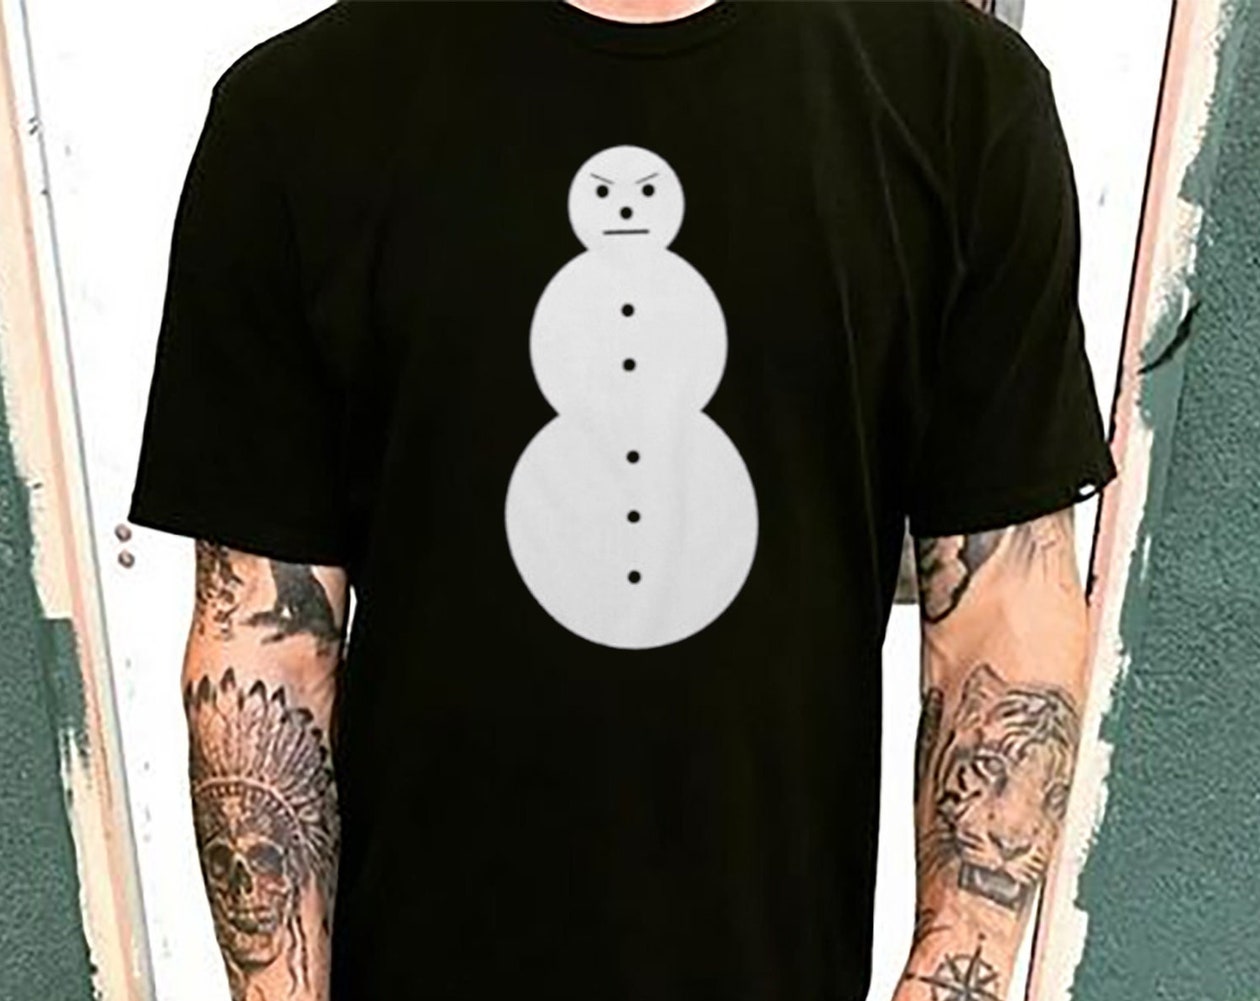 Jeezy-Snowman-Shirt-31712152